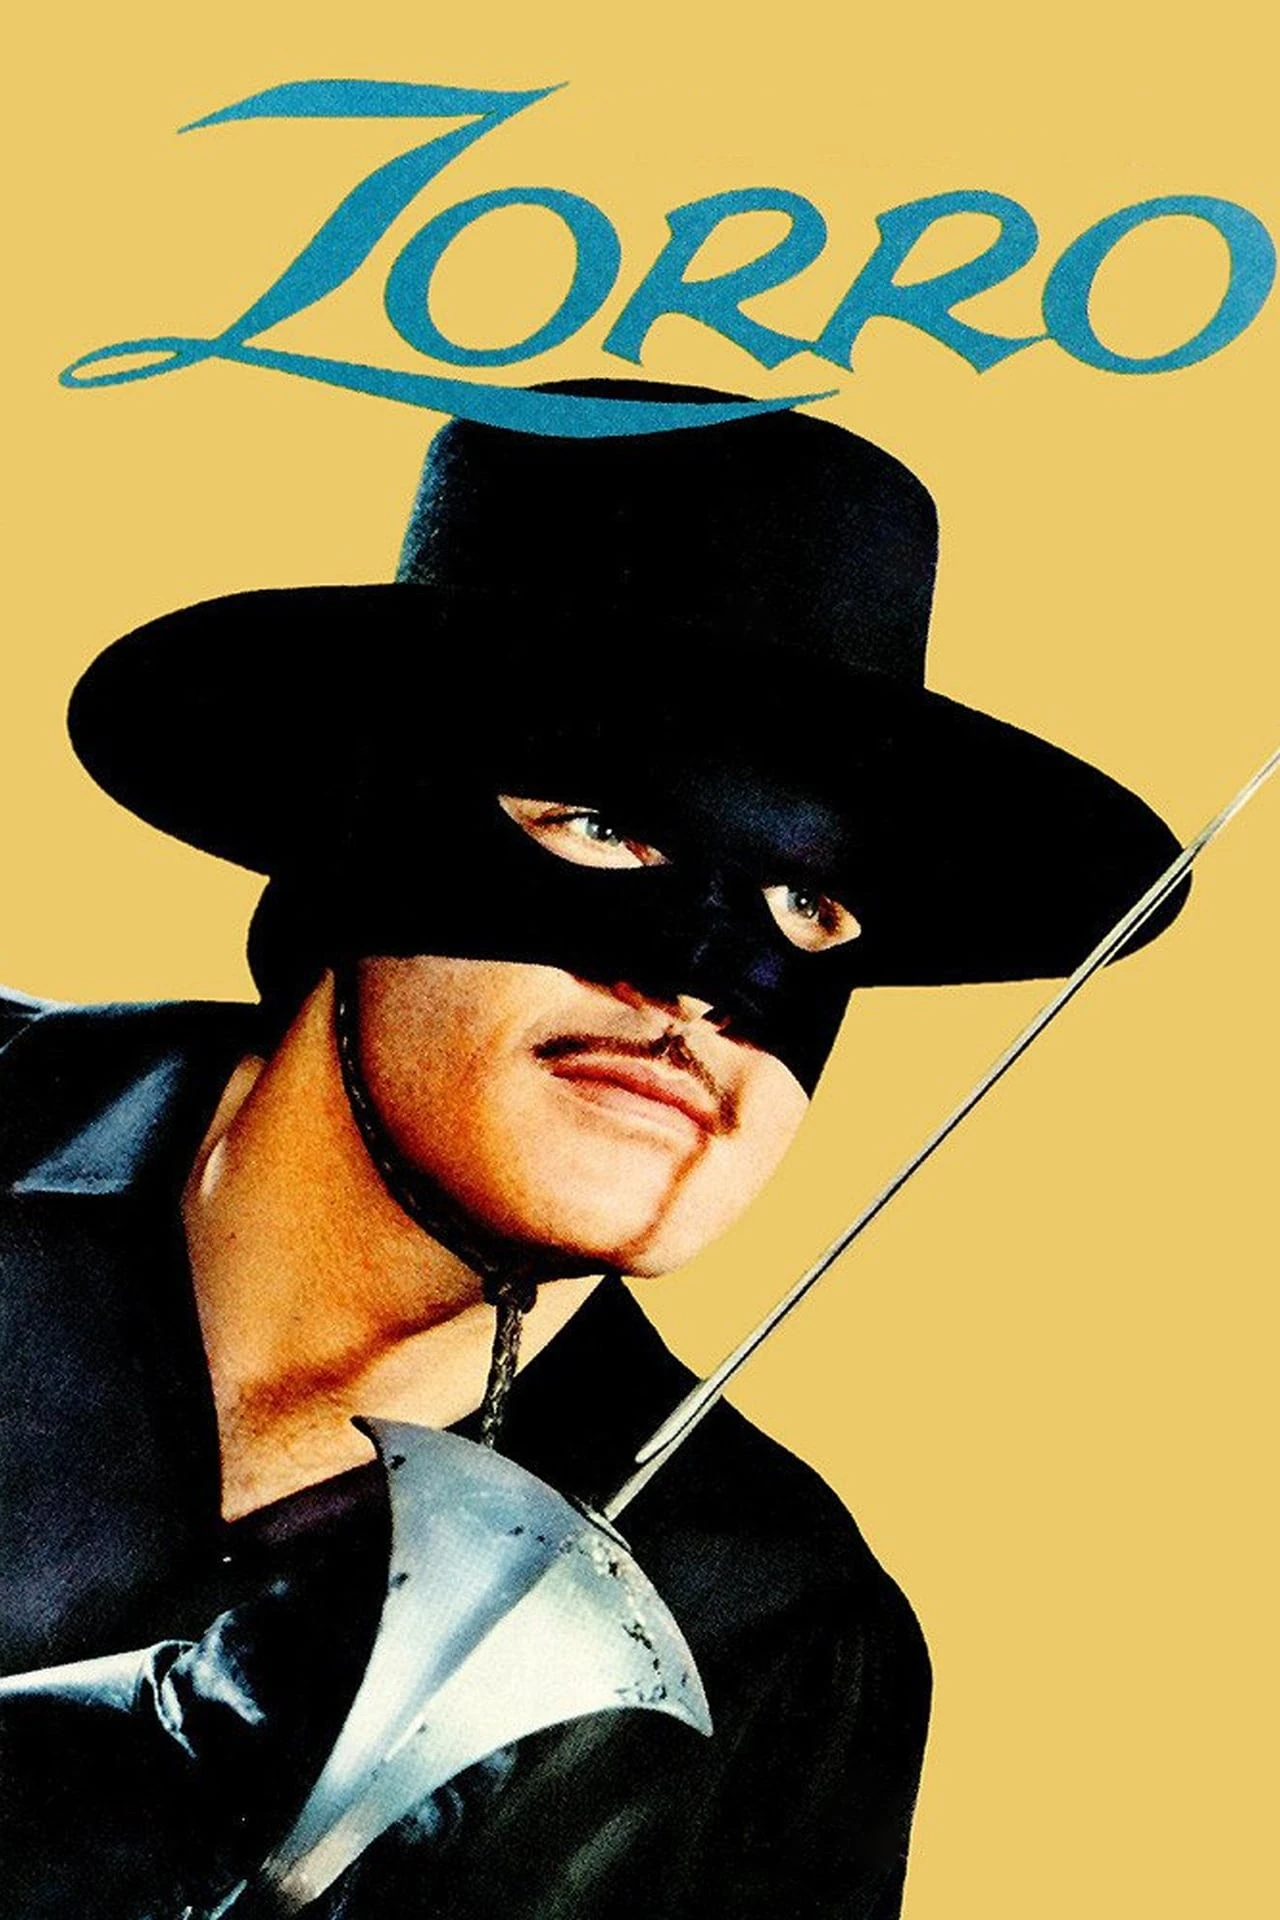 Zorro  musique pour dressage